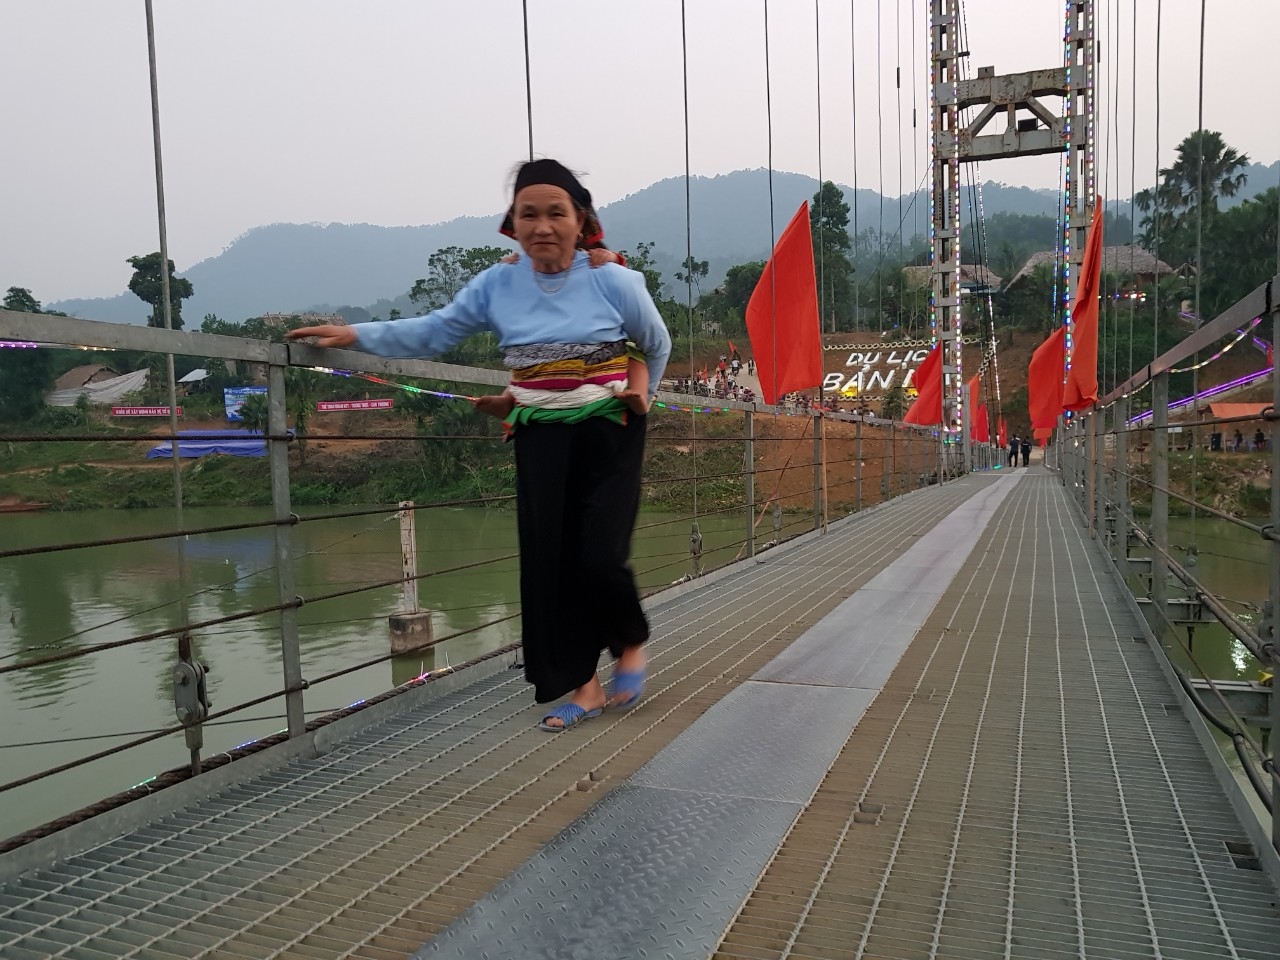 Sau hơn 10 năm triển khai XDNTM, bộ mặt nông thôn, miền núi Thanh Hóa có nhiều thay đổi (Trong ảnh: cây cầu vào bản Mạ huyện Thường Xuân)